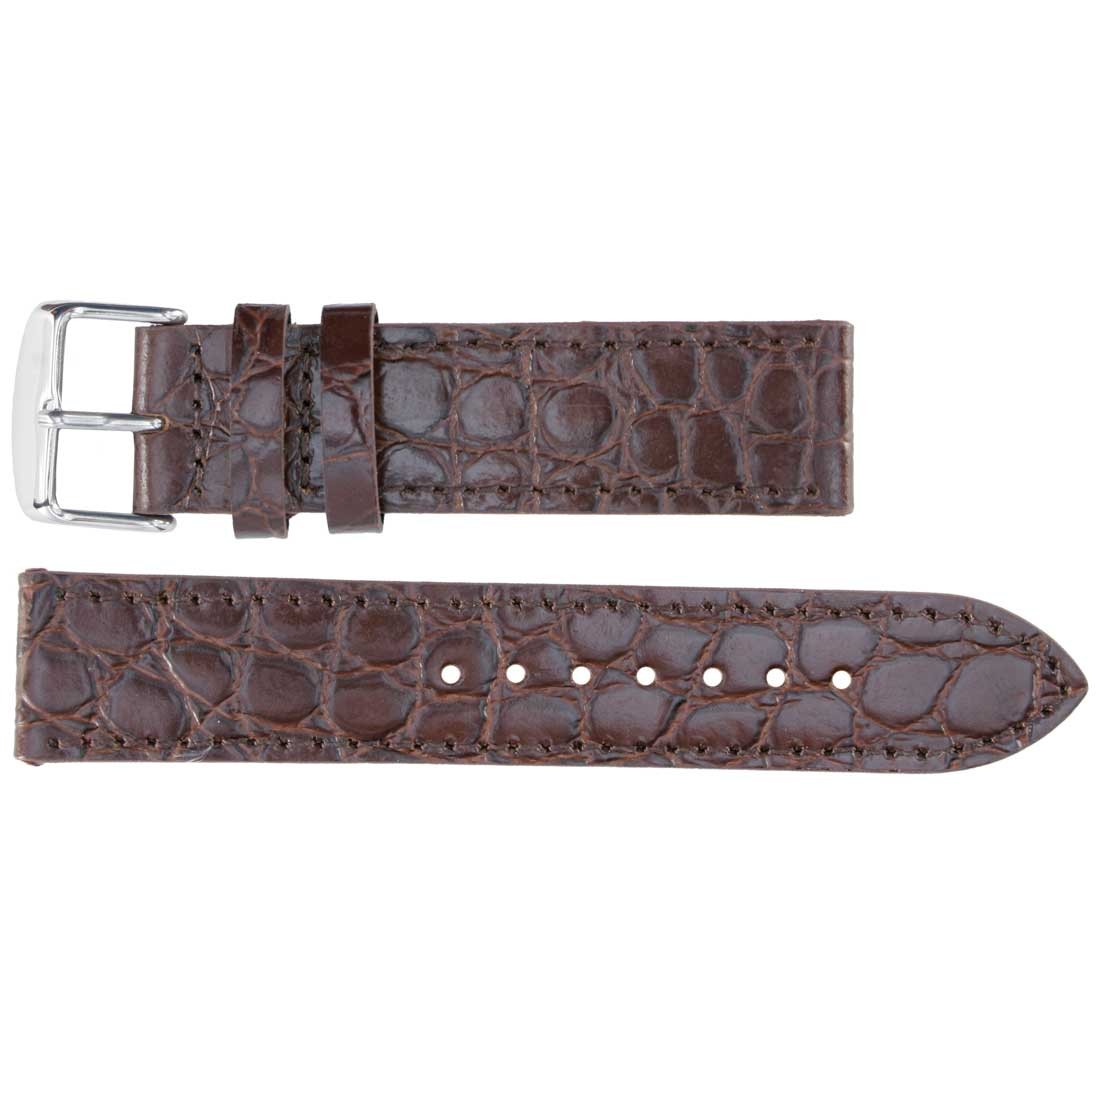 Banda No. 152 Long Crocodile Grain Fine Leather Straps (18mm~24mm)